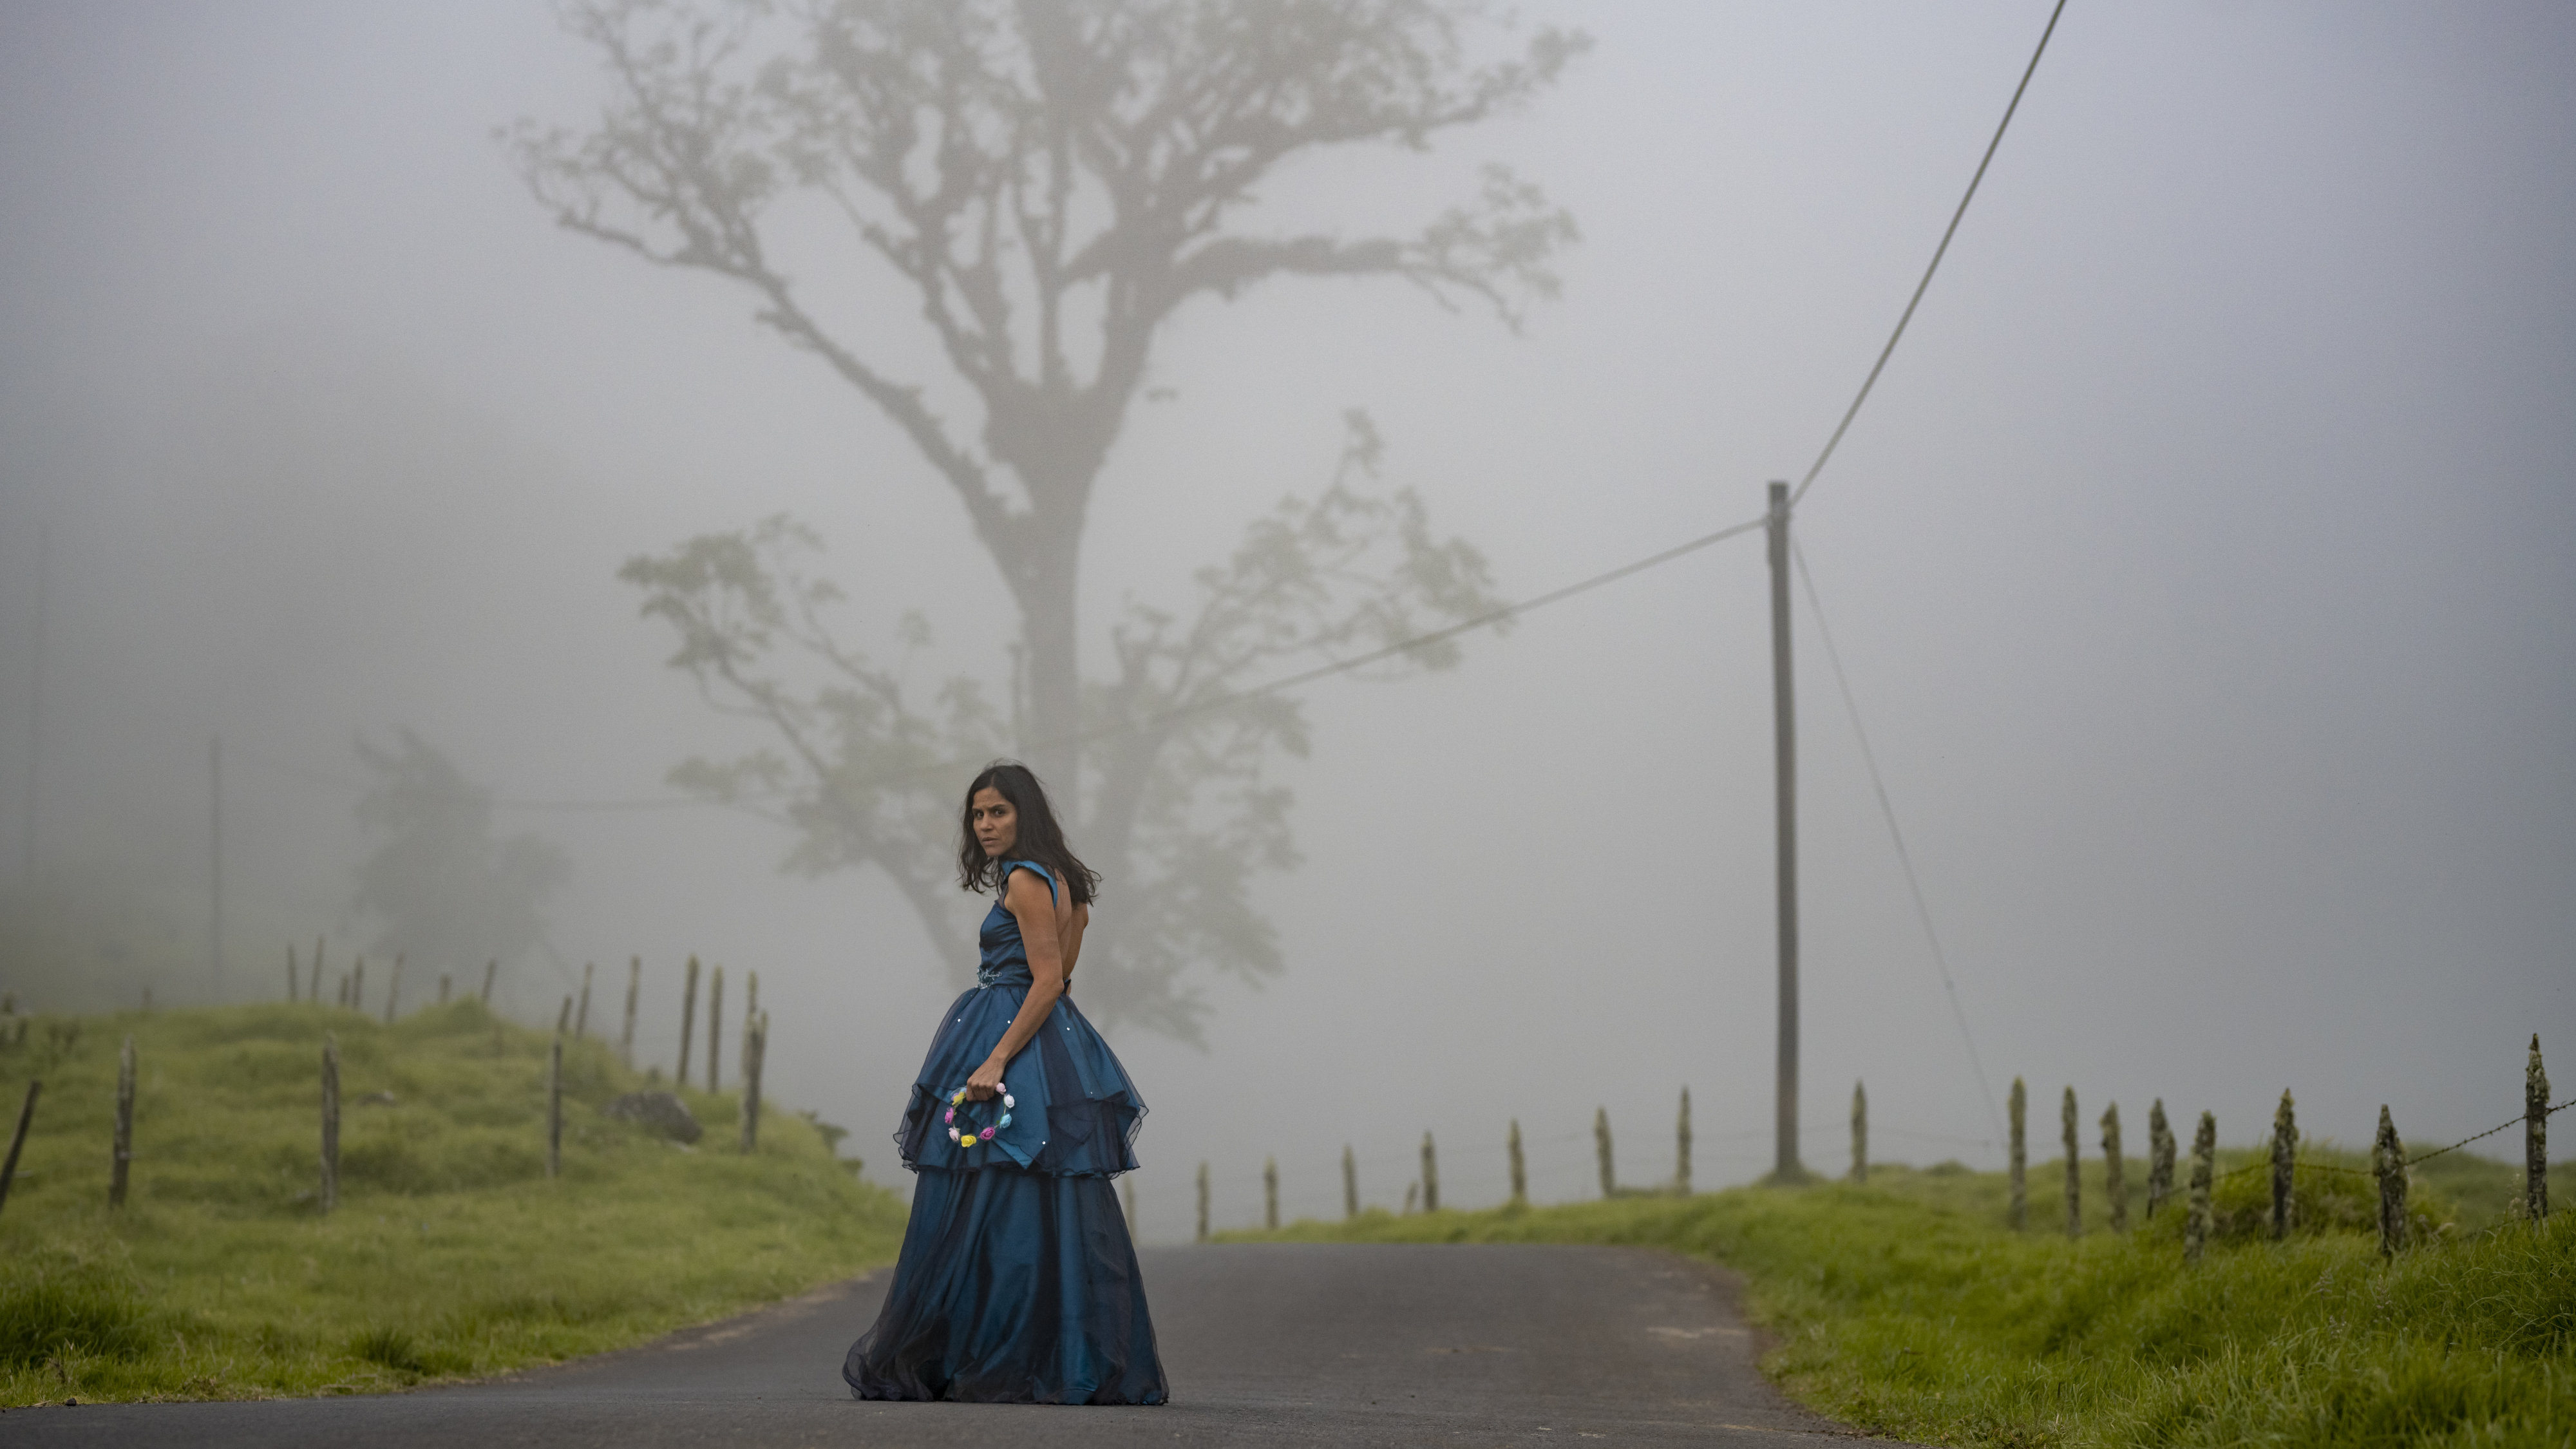 Eine junge Frau steht in einem petrolblauem Kleid auf einer Straße im Nebel und schaut über ihre Schulter zurück.